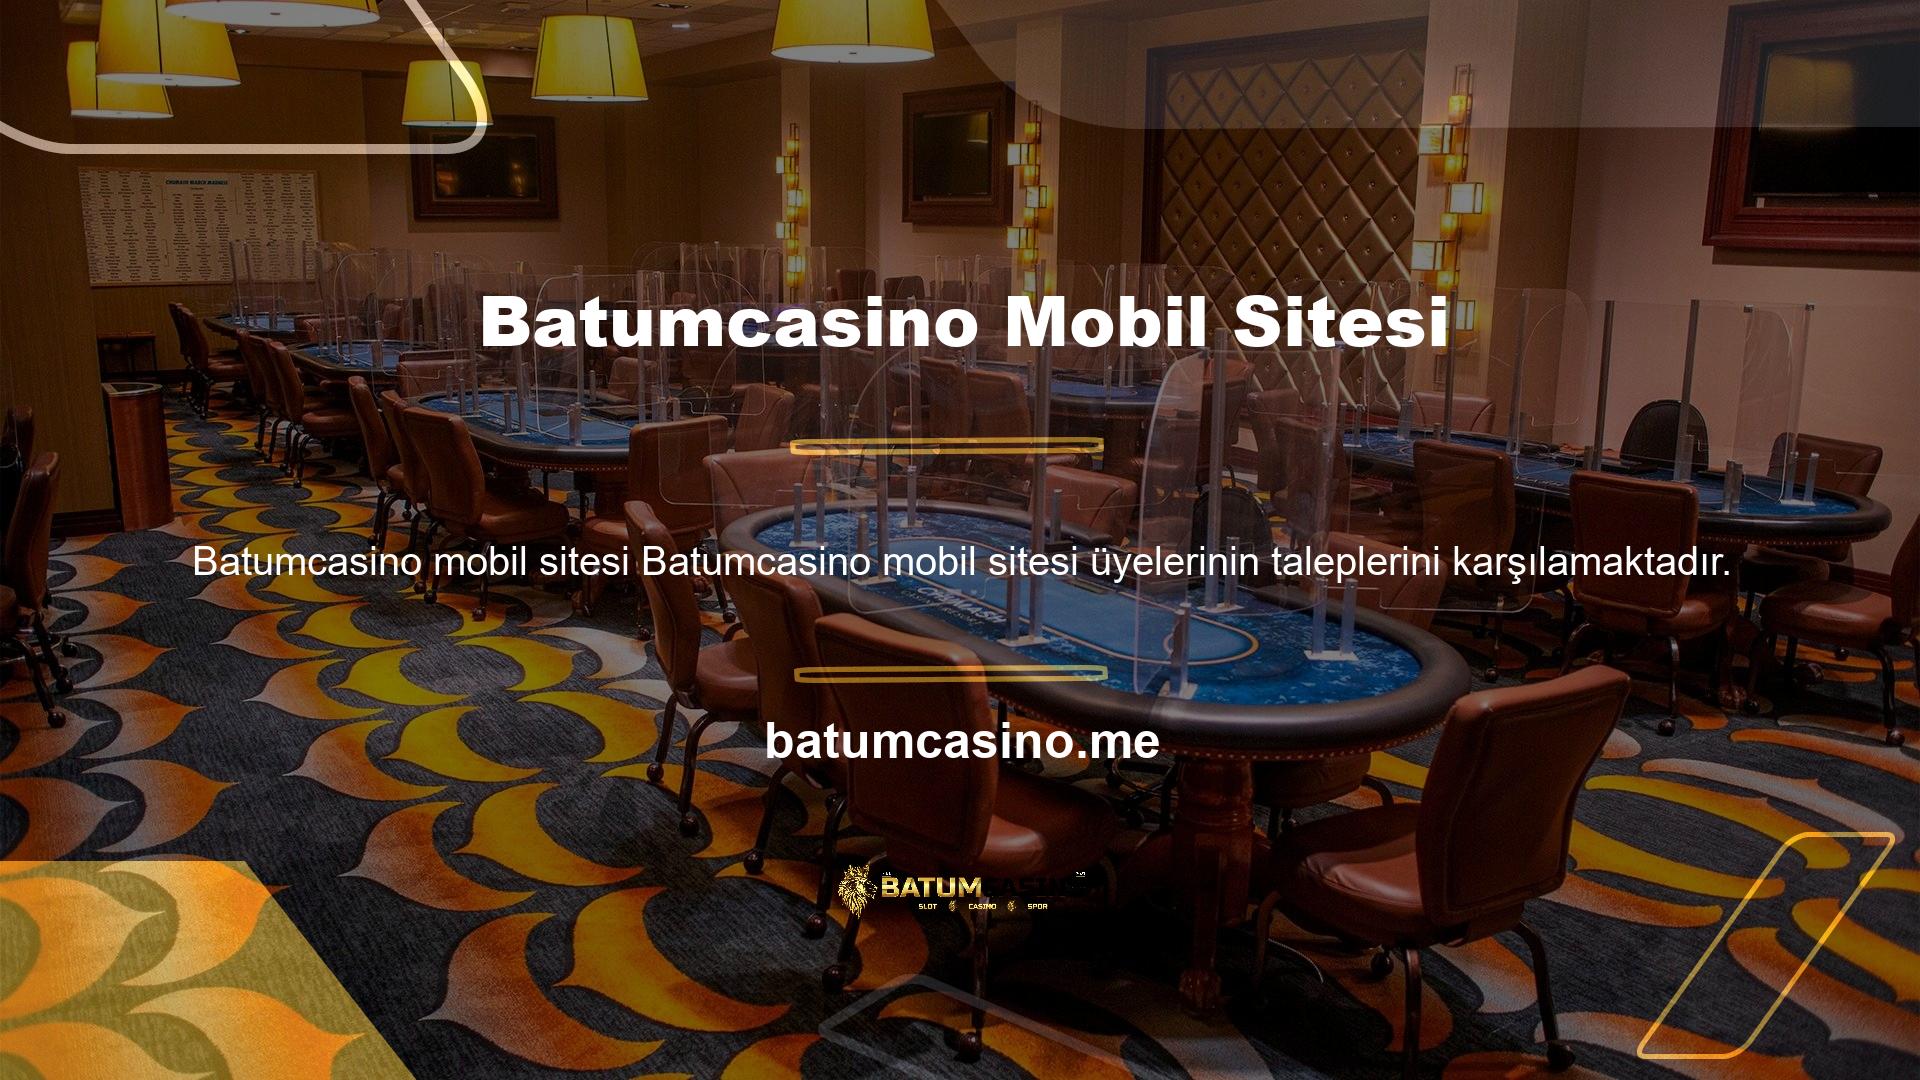 Öncelikle Batumcasino spor bahisleri ve casino oyunlarına yönelik bir sitedir